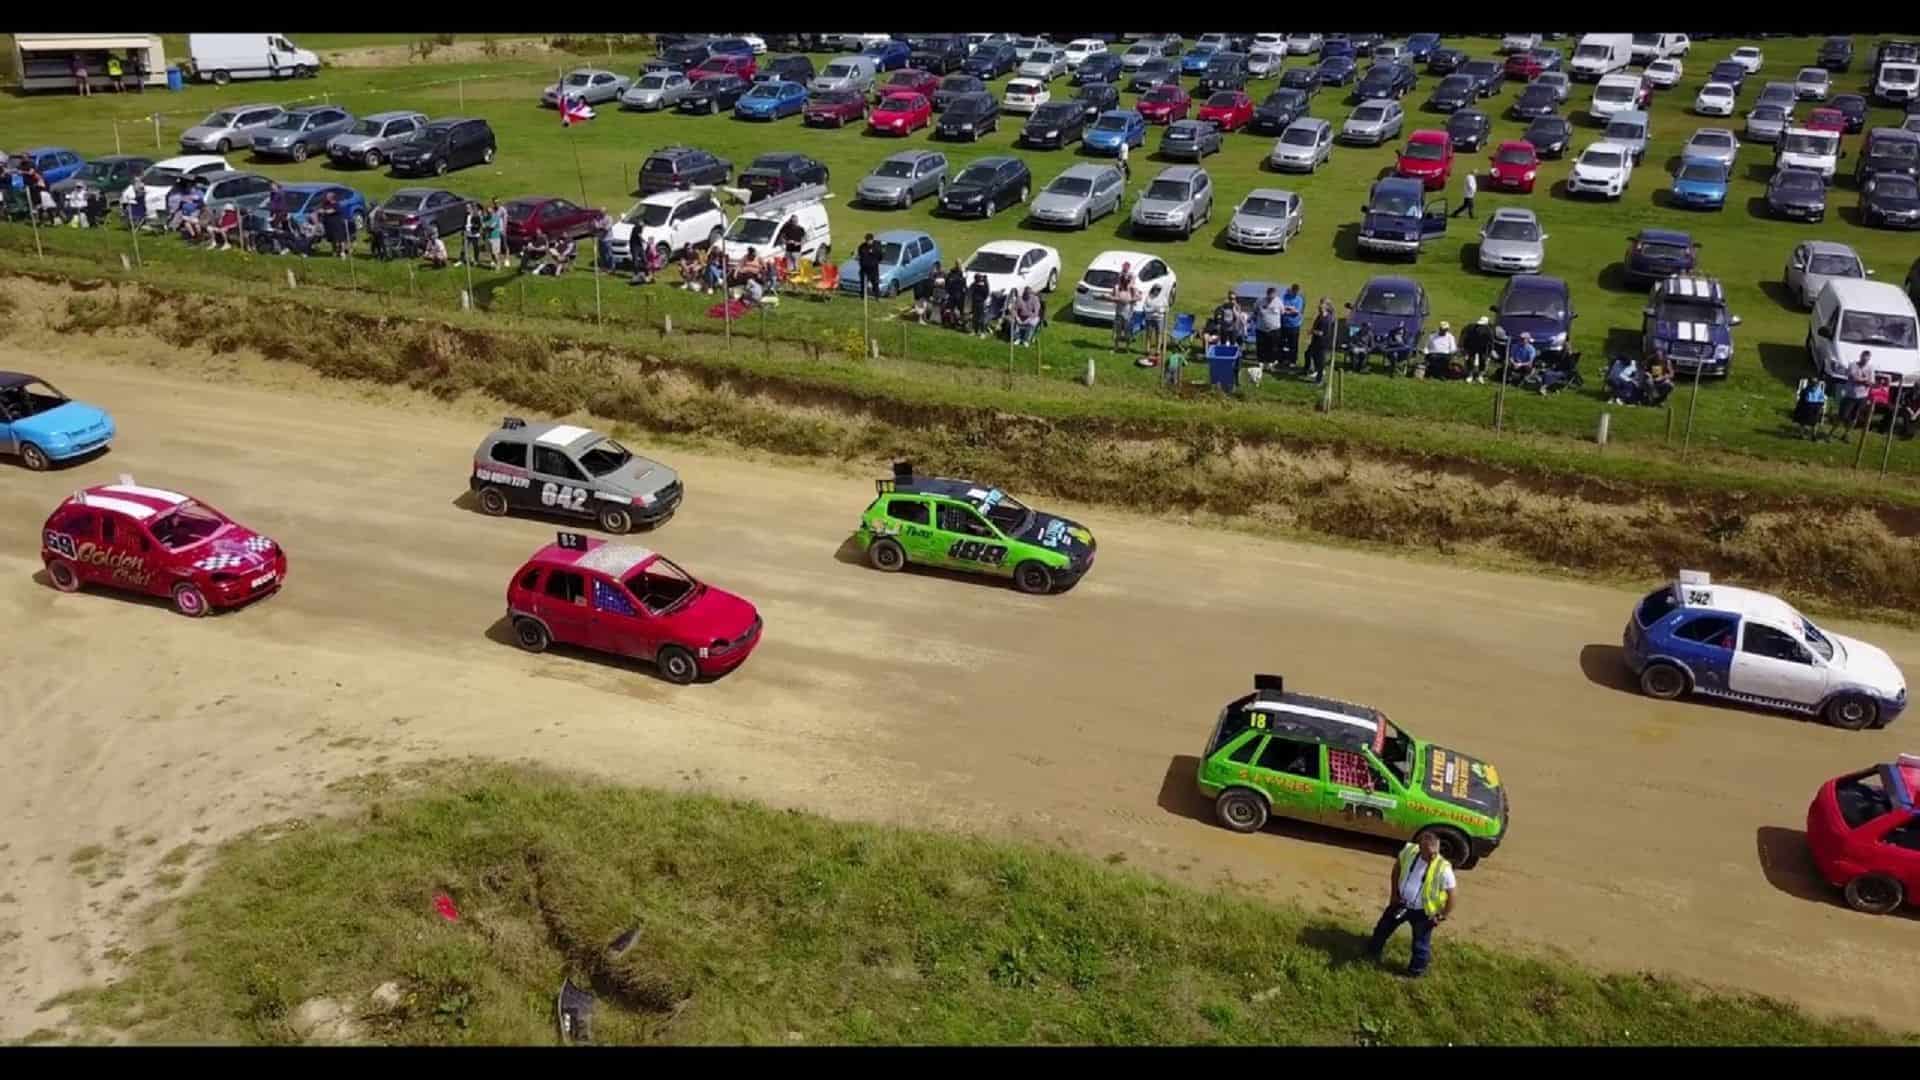 Smallfield raceway in UK